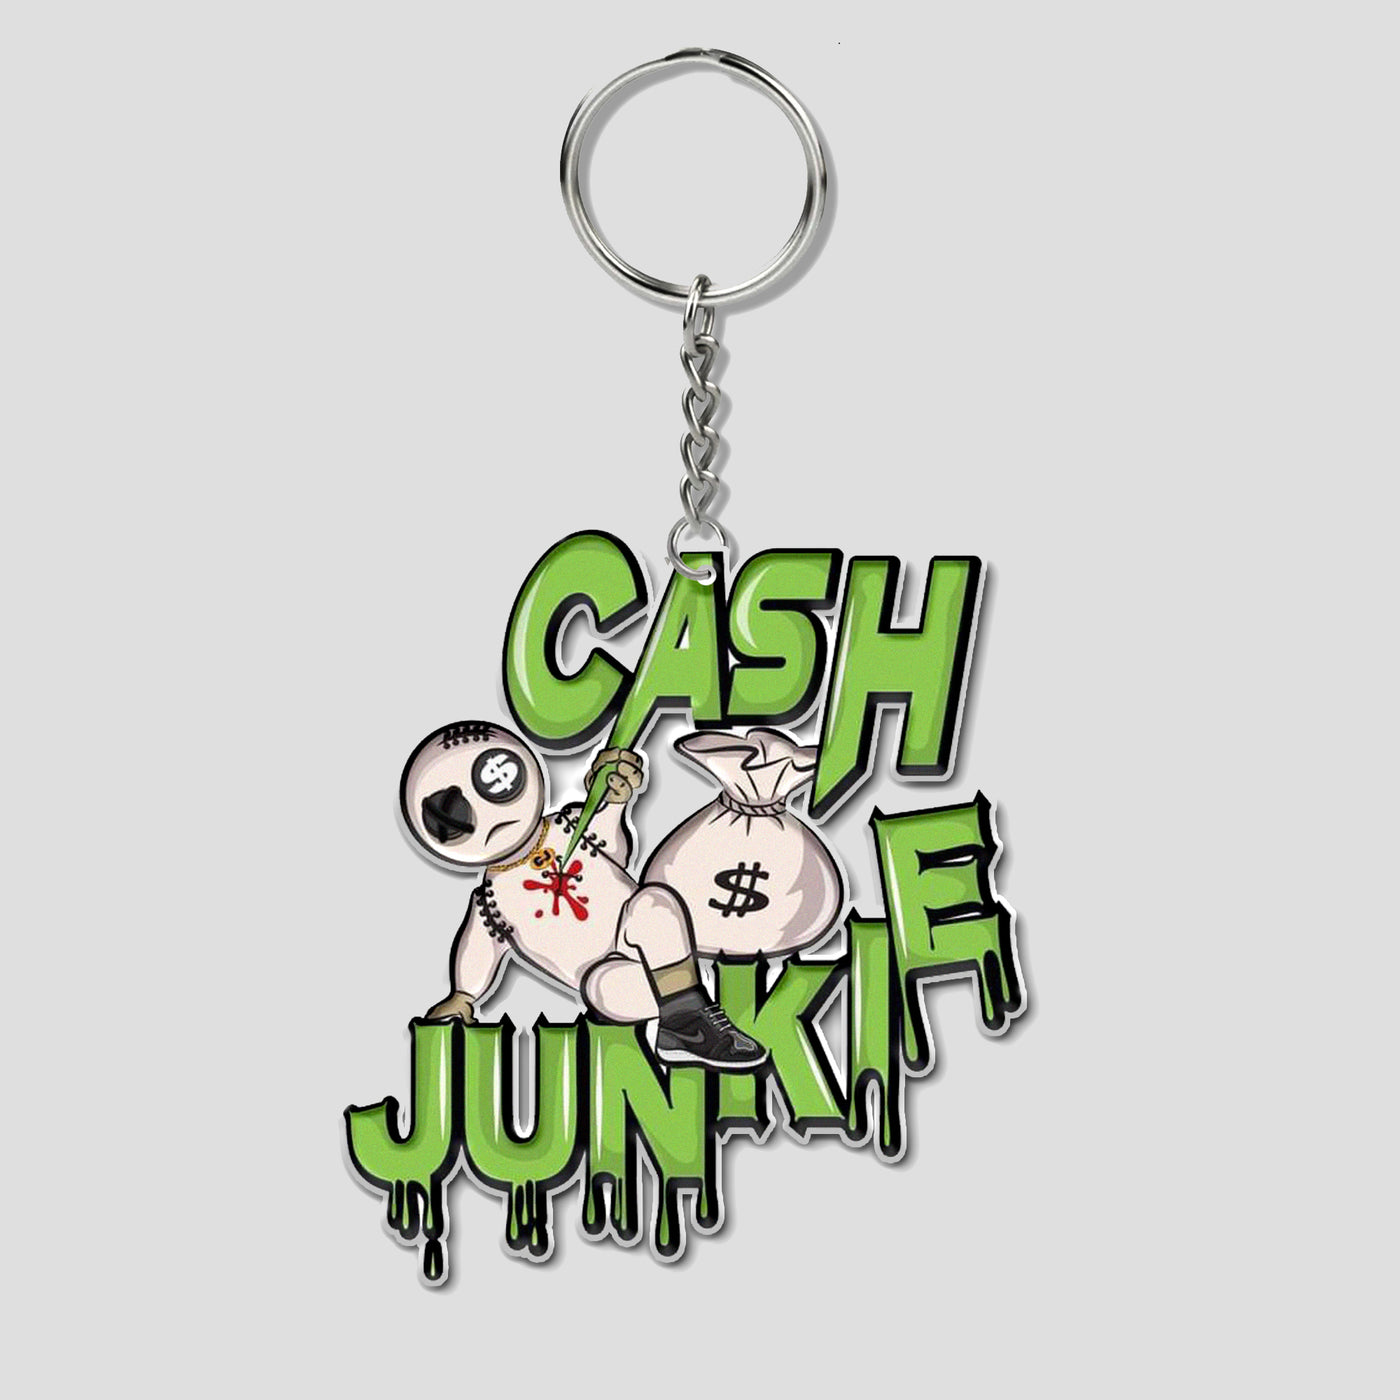 Cash Junkie Keychain